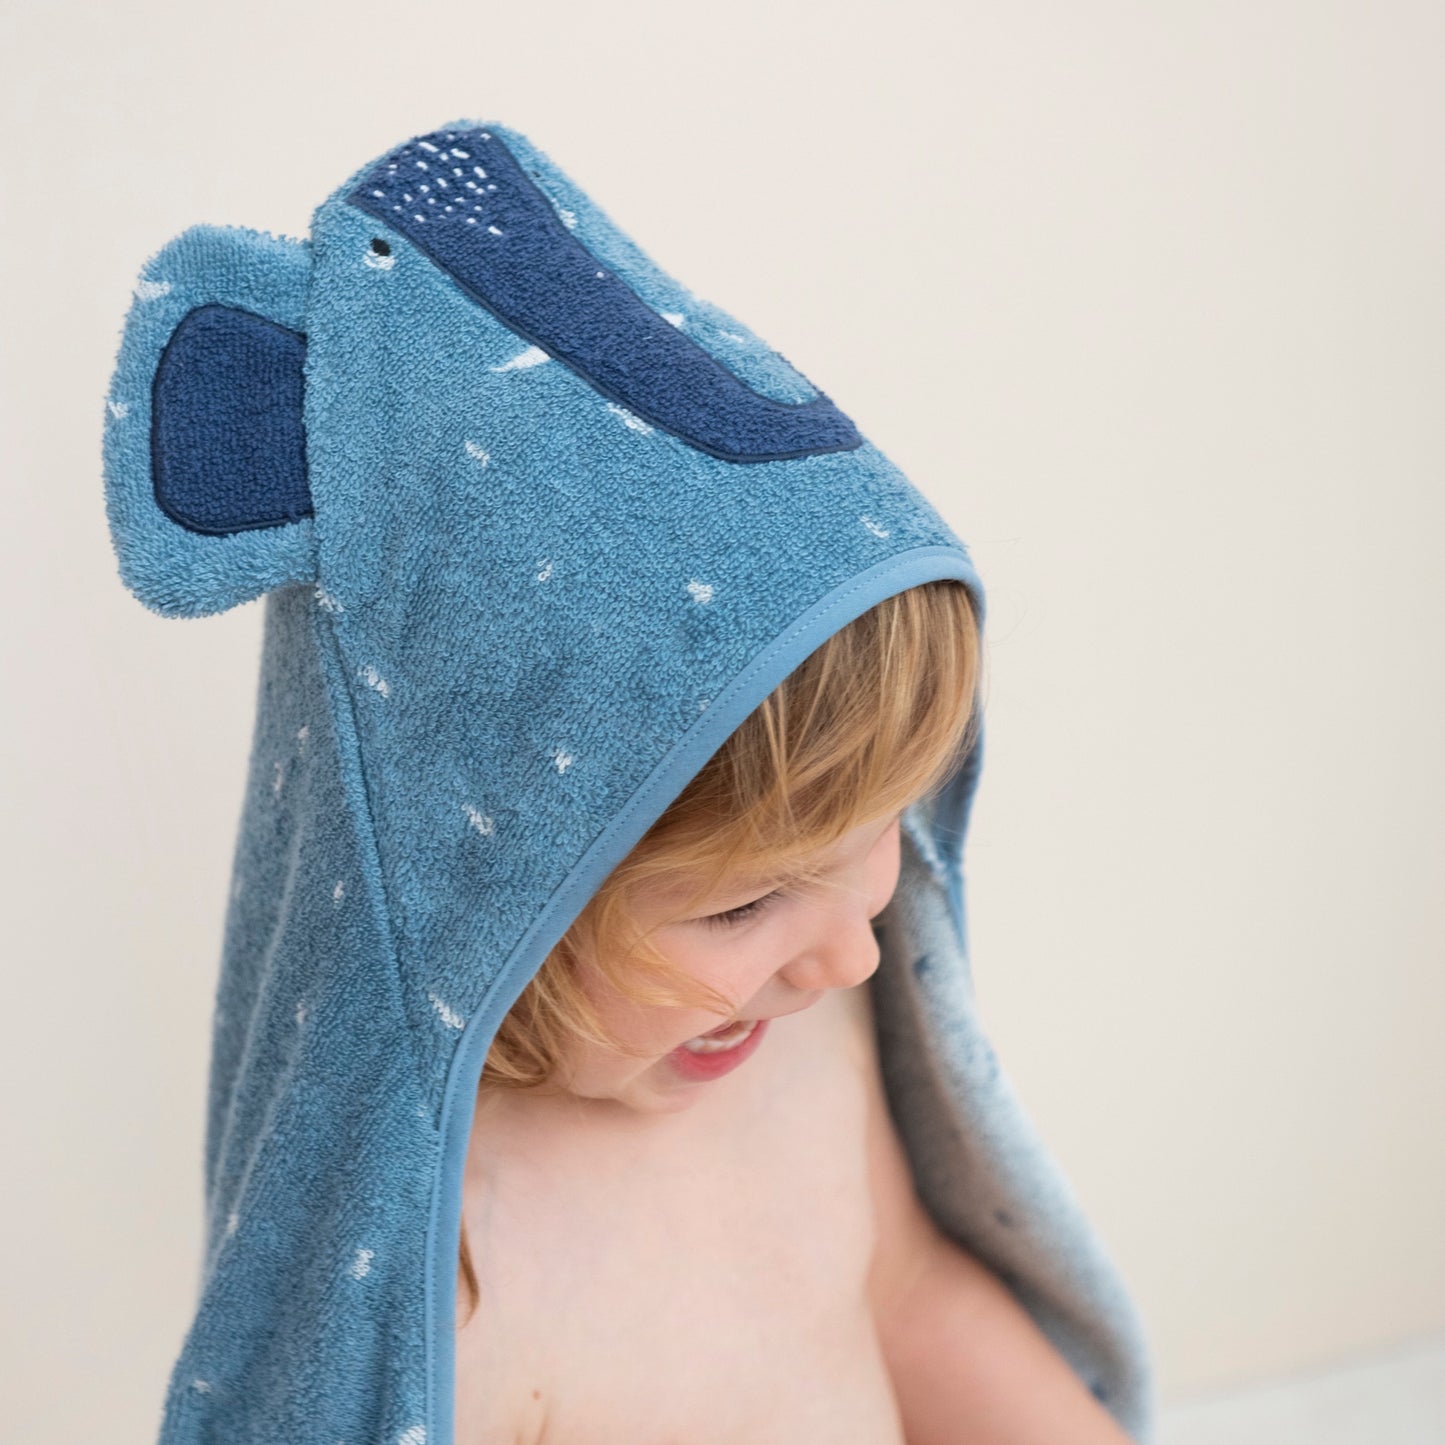 Hooded Towel "Mrs. Elephant"